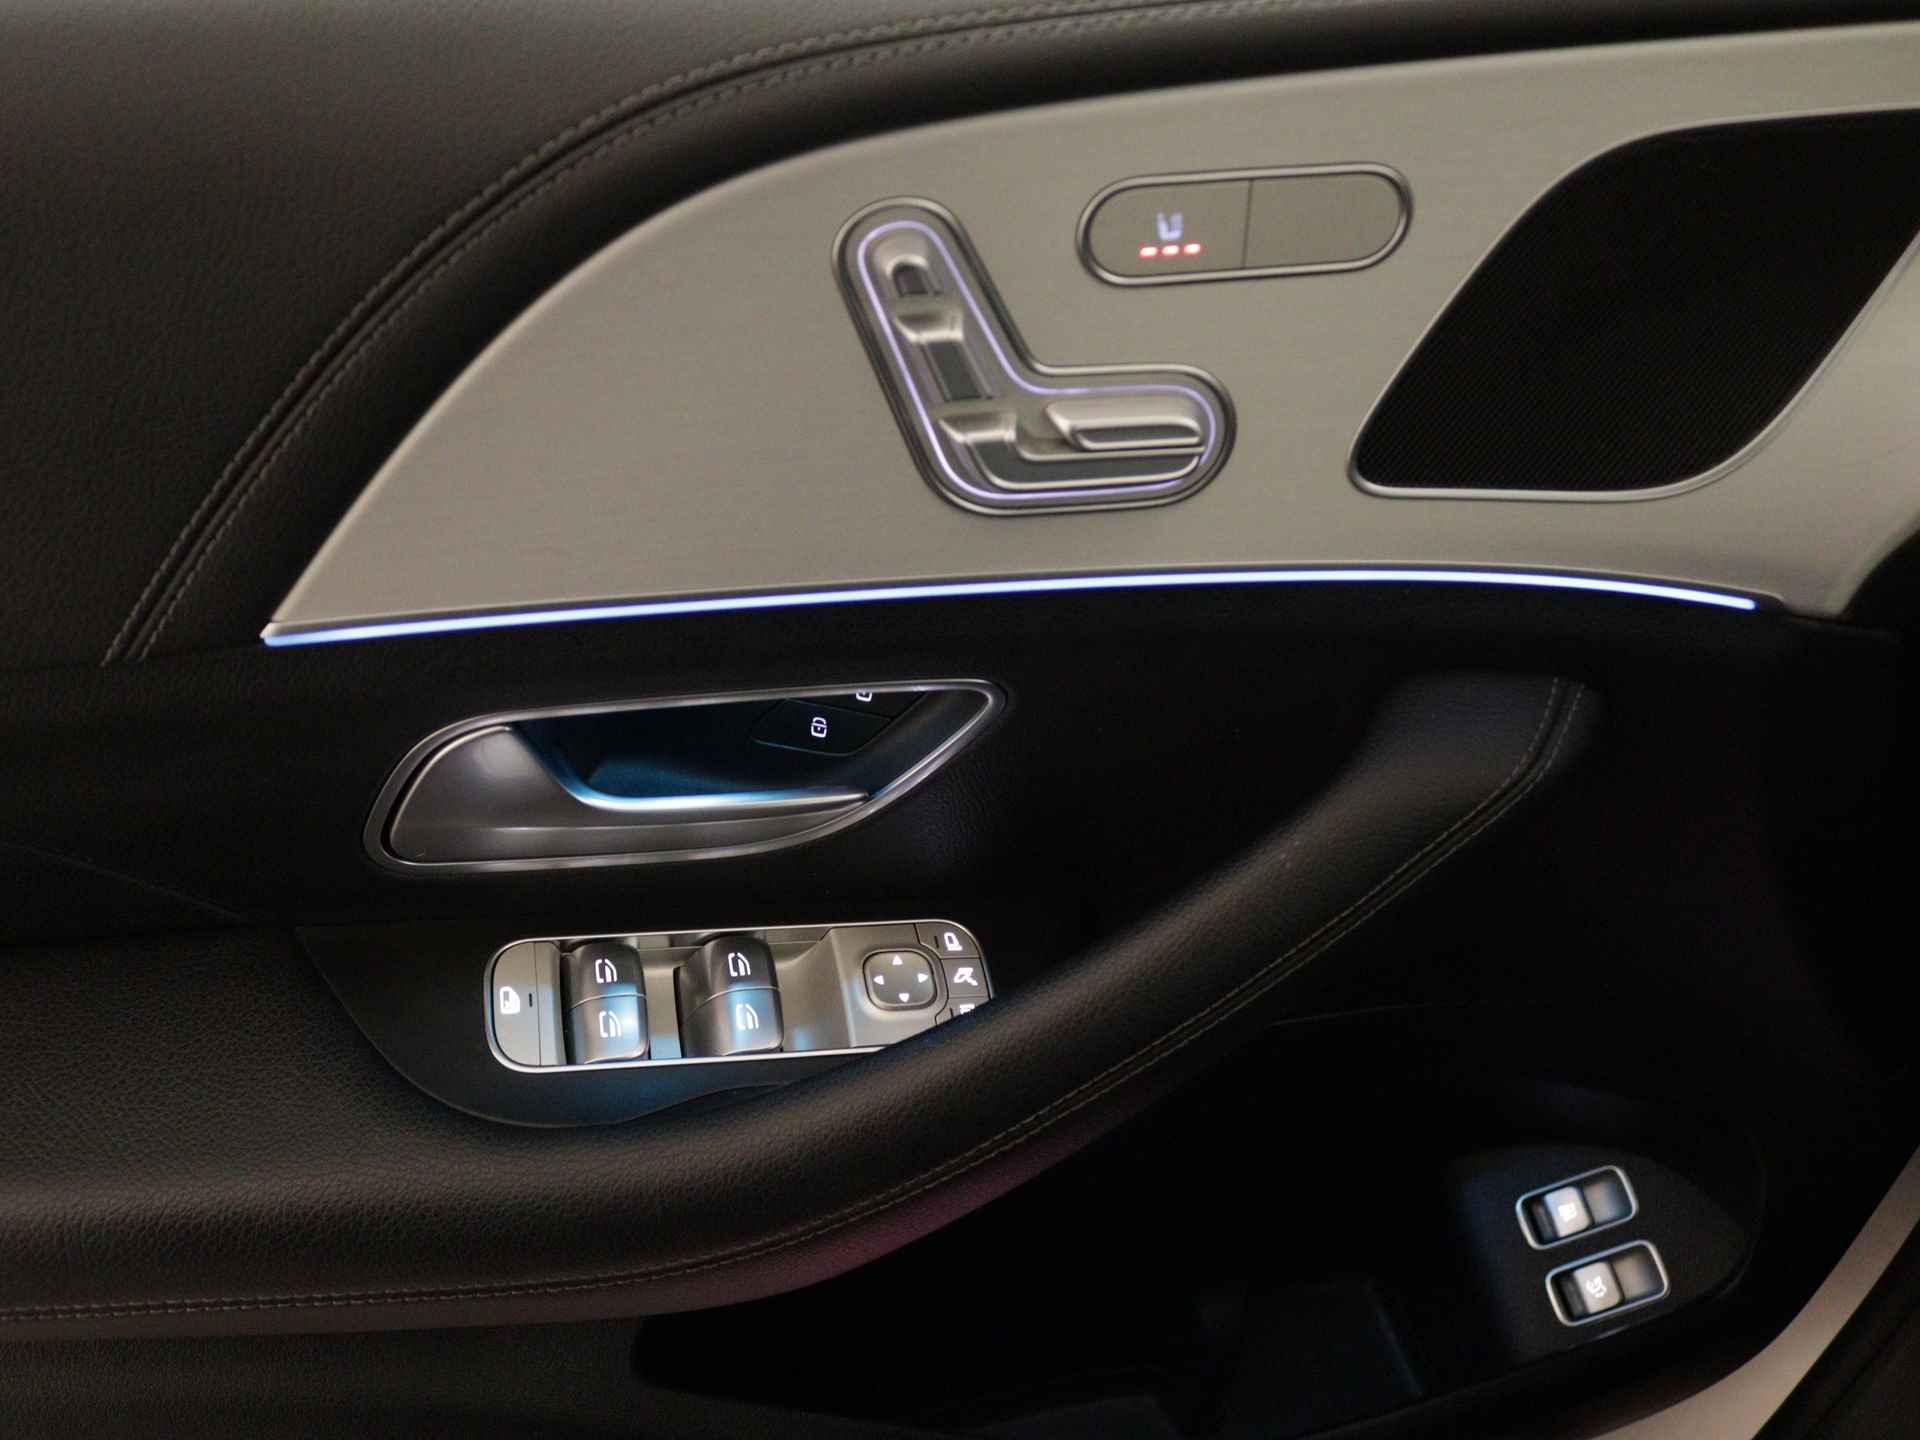 Mercedes-Benz GLE 350 e 4-MATIC AMG Nightpakket Limited 5 spaaks lichtmetalen velgen | Trekhaak | Airmatic | Treeplanken | Alarm klasse 3 |  Augmented Reality | sfeerverlichting | DAB | Parking support | inclusief 24 maanden MB Certified garantie voor europa - 32/45